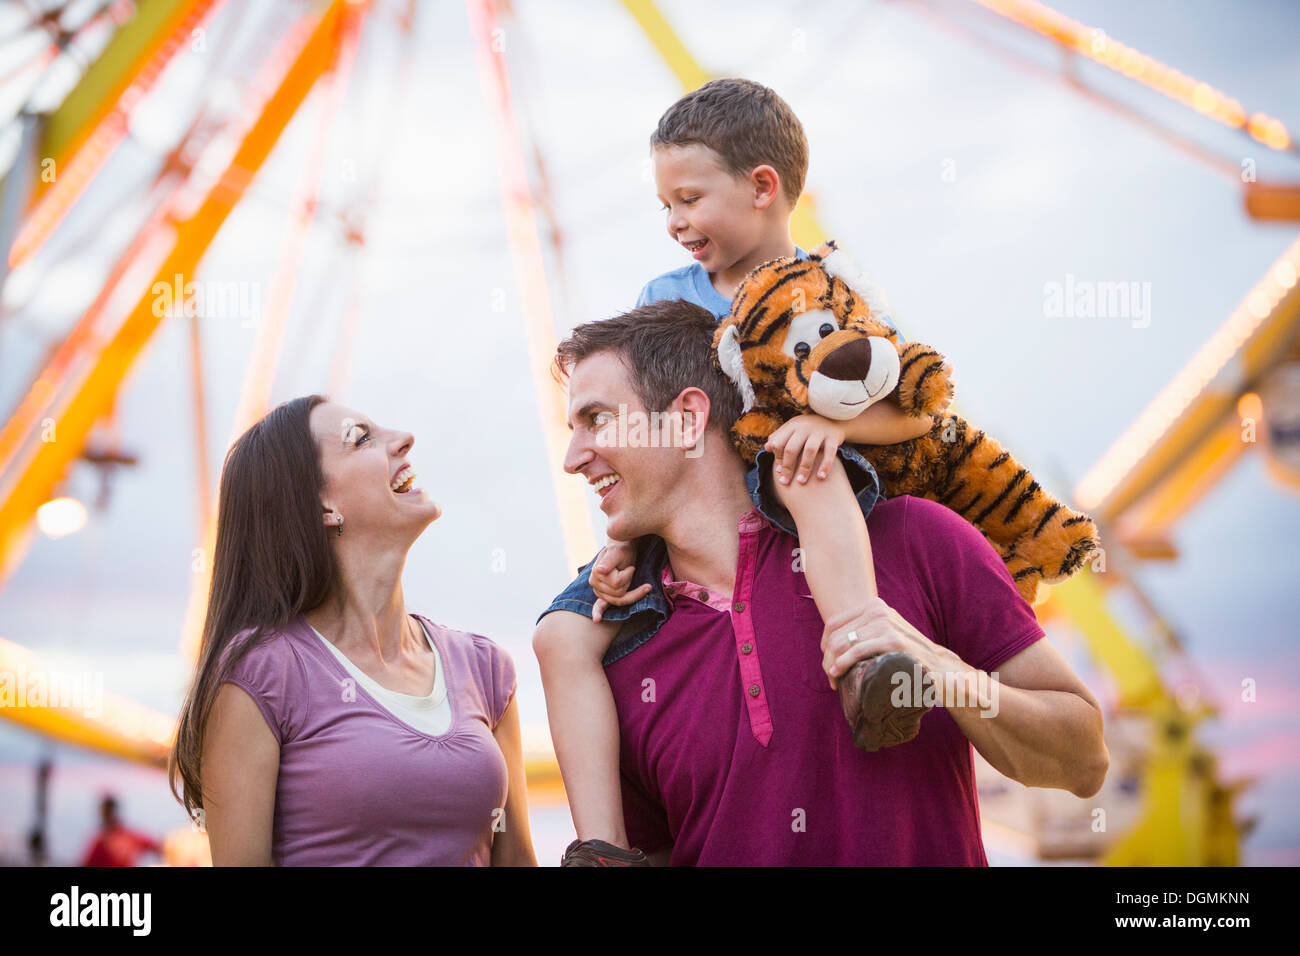 USA, Utah, Salt Lake City, Happy Family with son (4-5) dans un parc d'attractions Banque D'Images